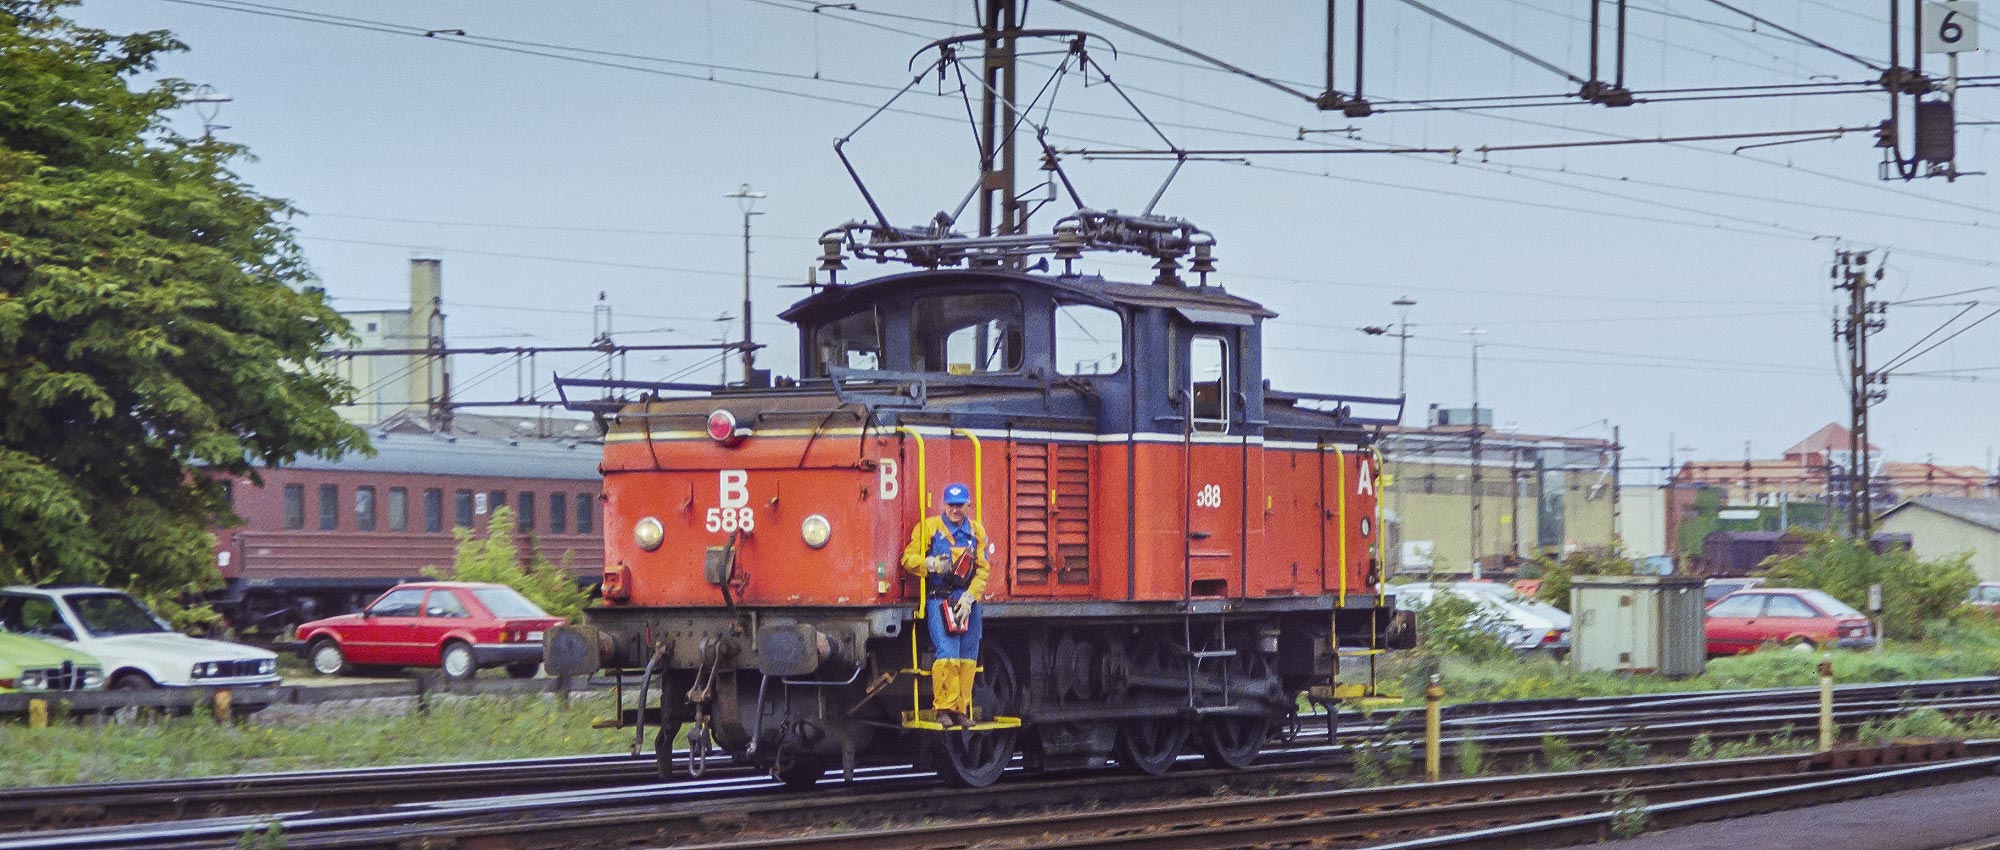 SJ Ue 588 i Malmö 1992